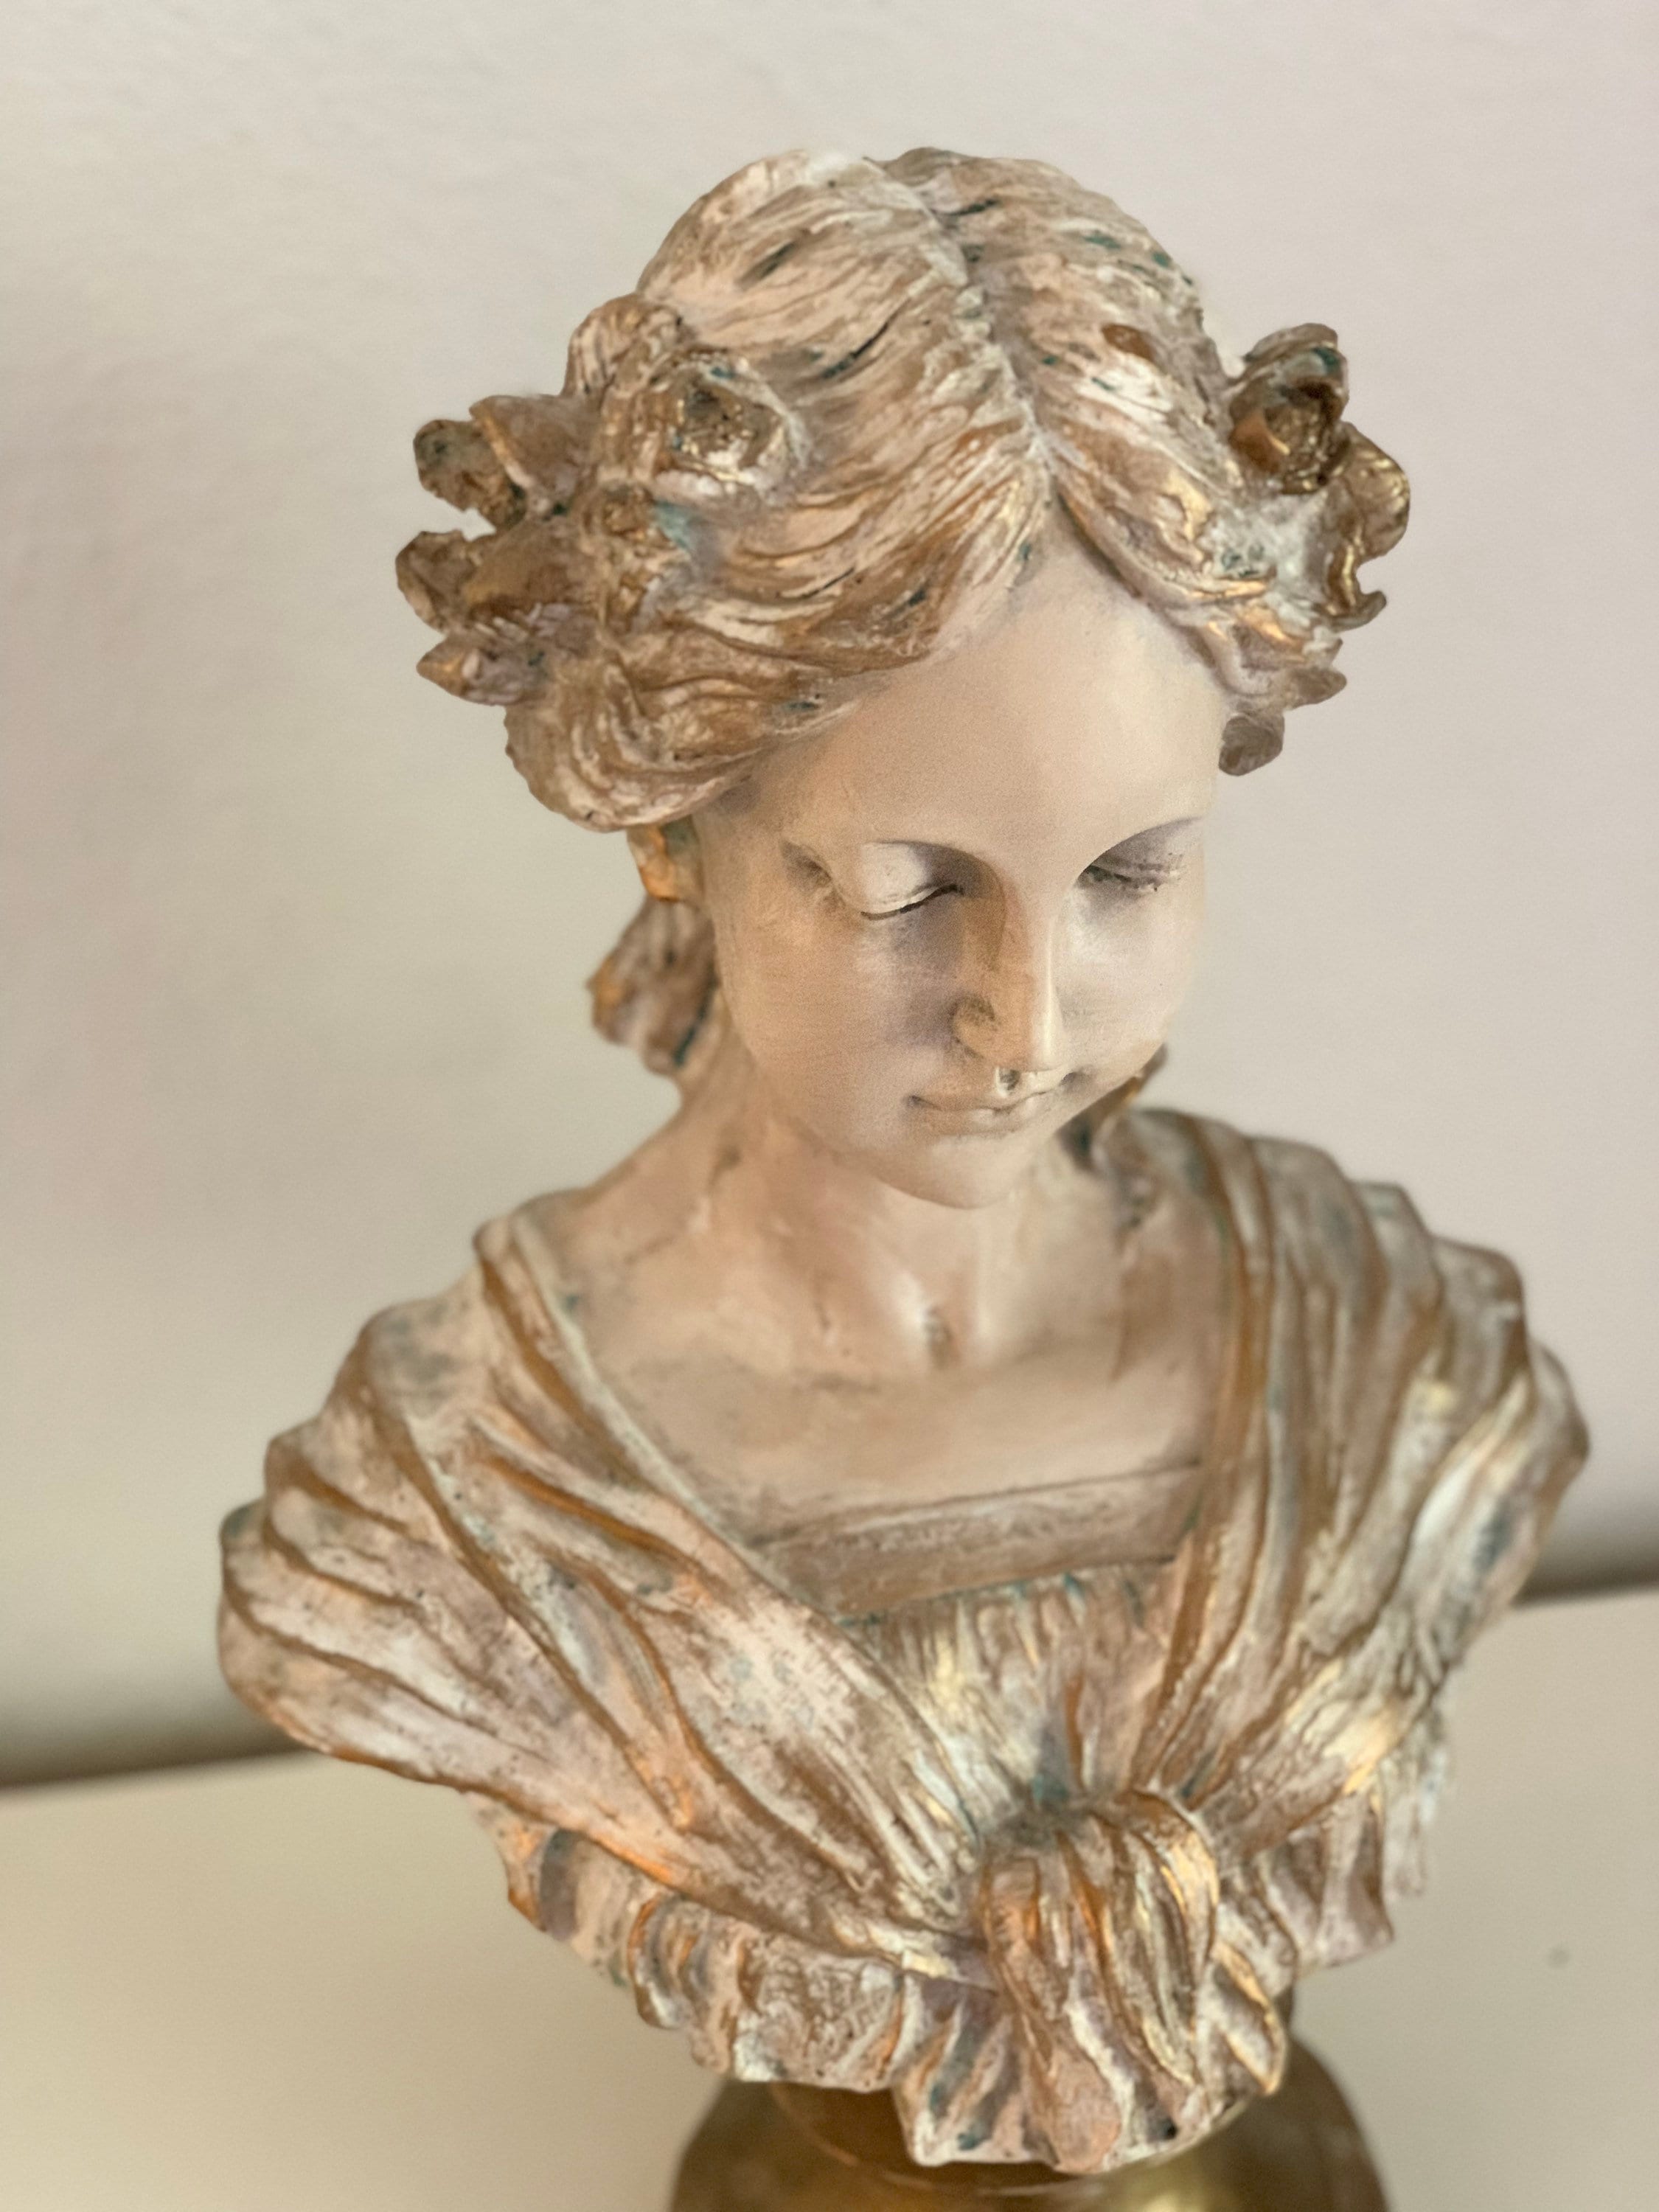 renaissance sculpture woman